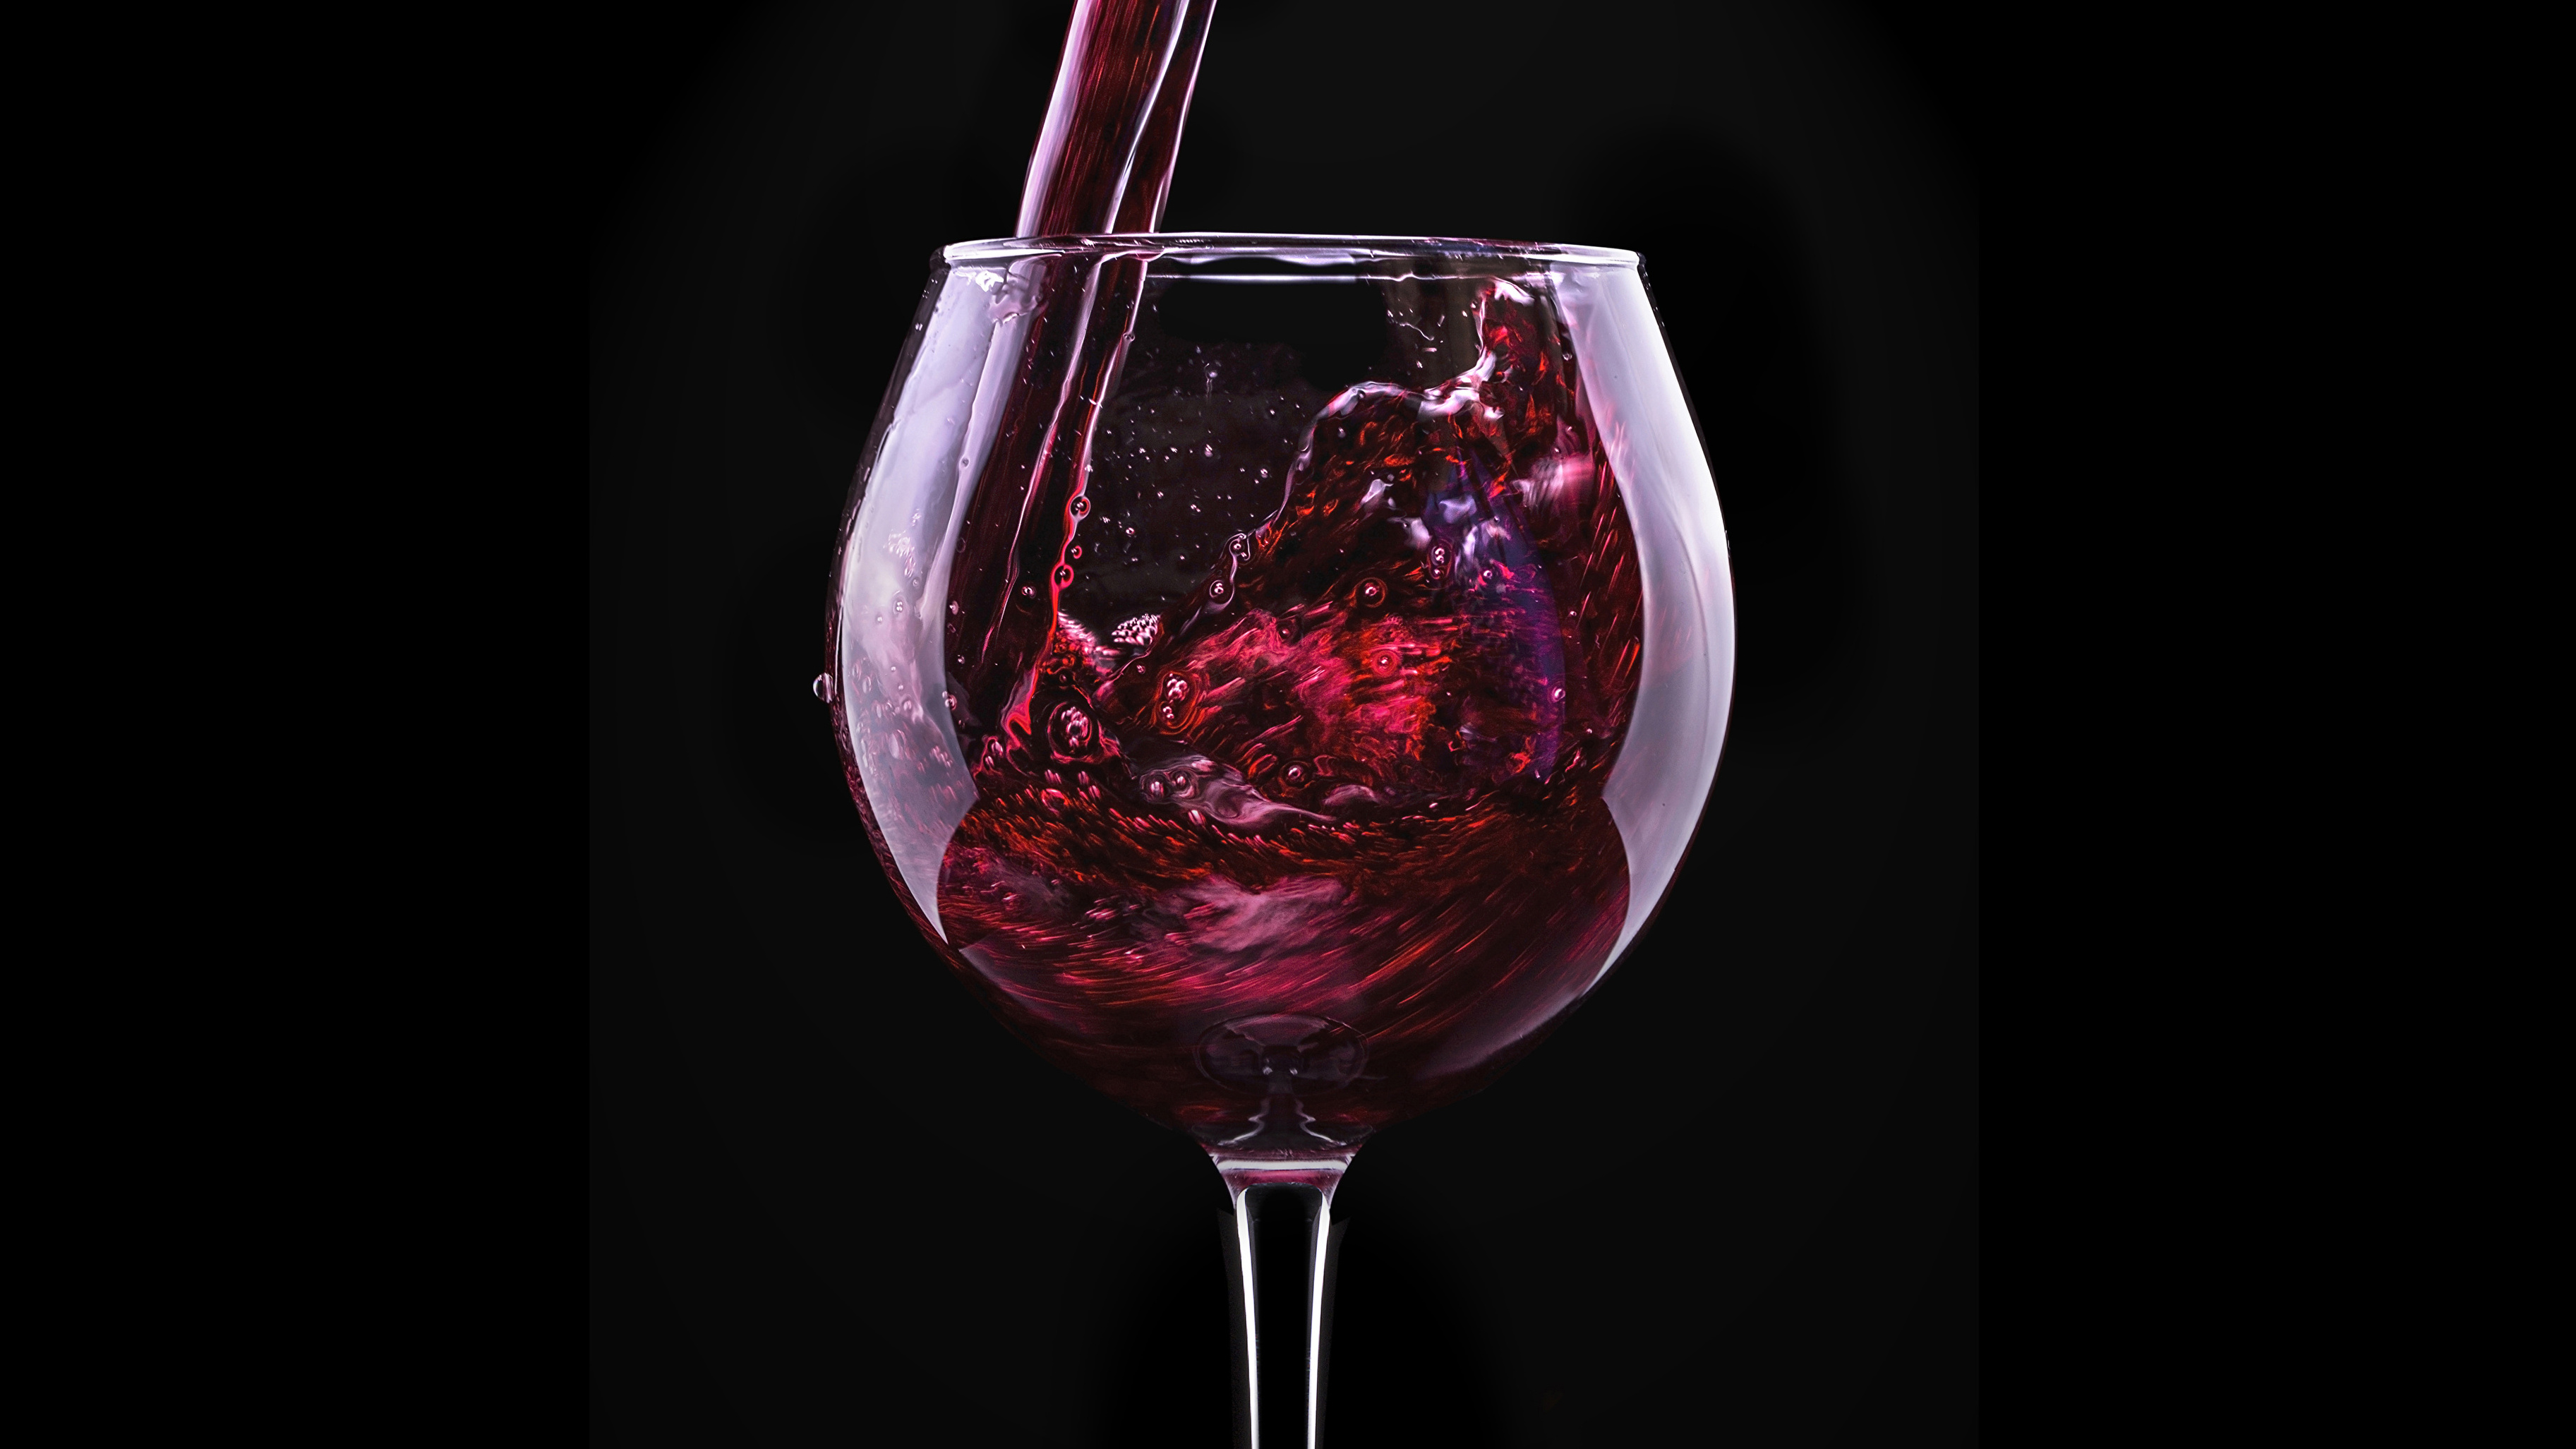 Правда ли бокал вина в день укрепляет здоровье сердца? Учёные проверили